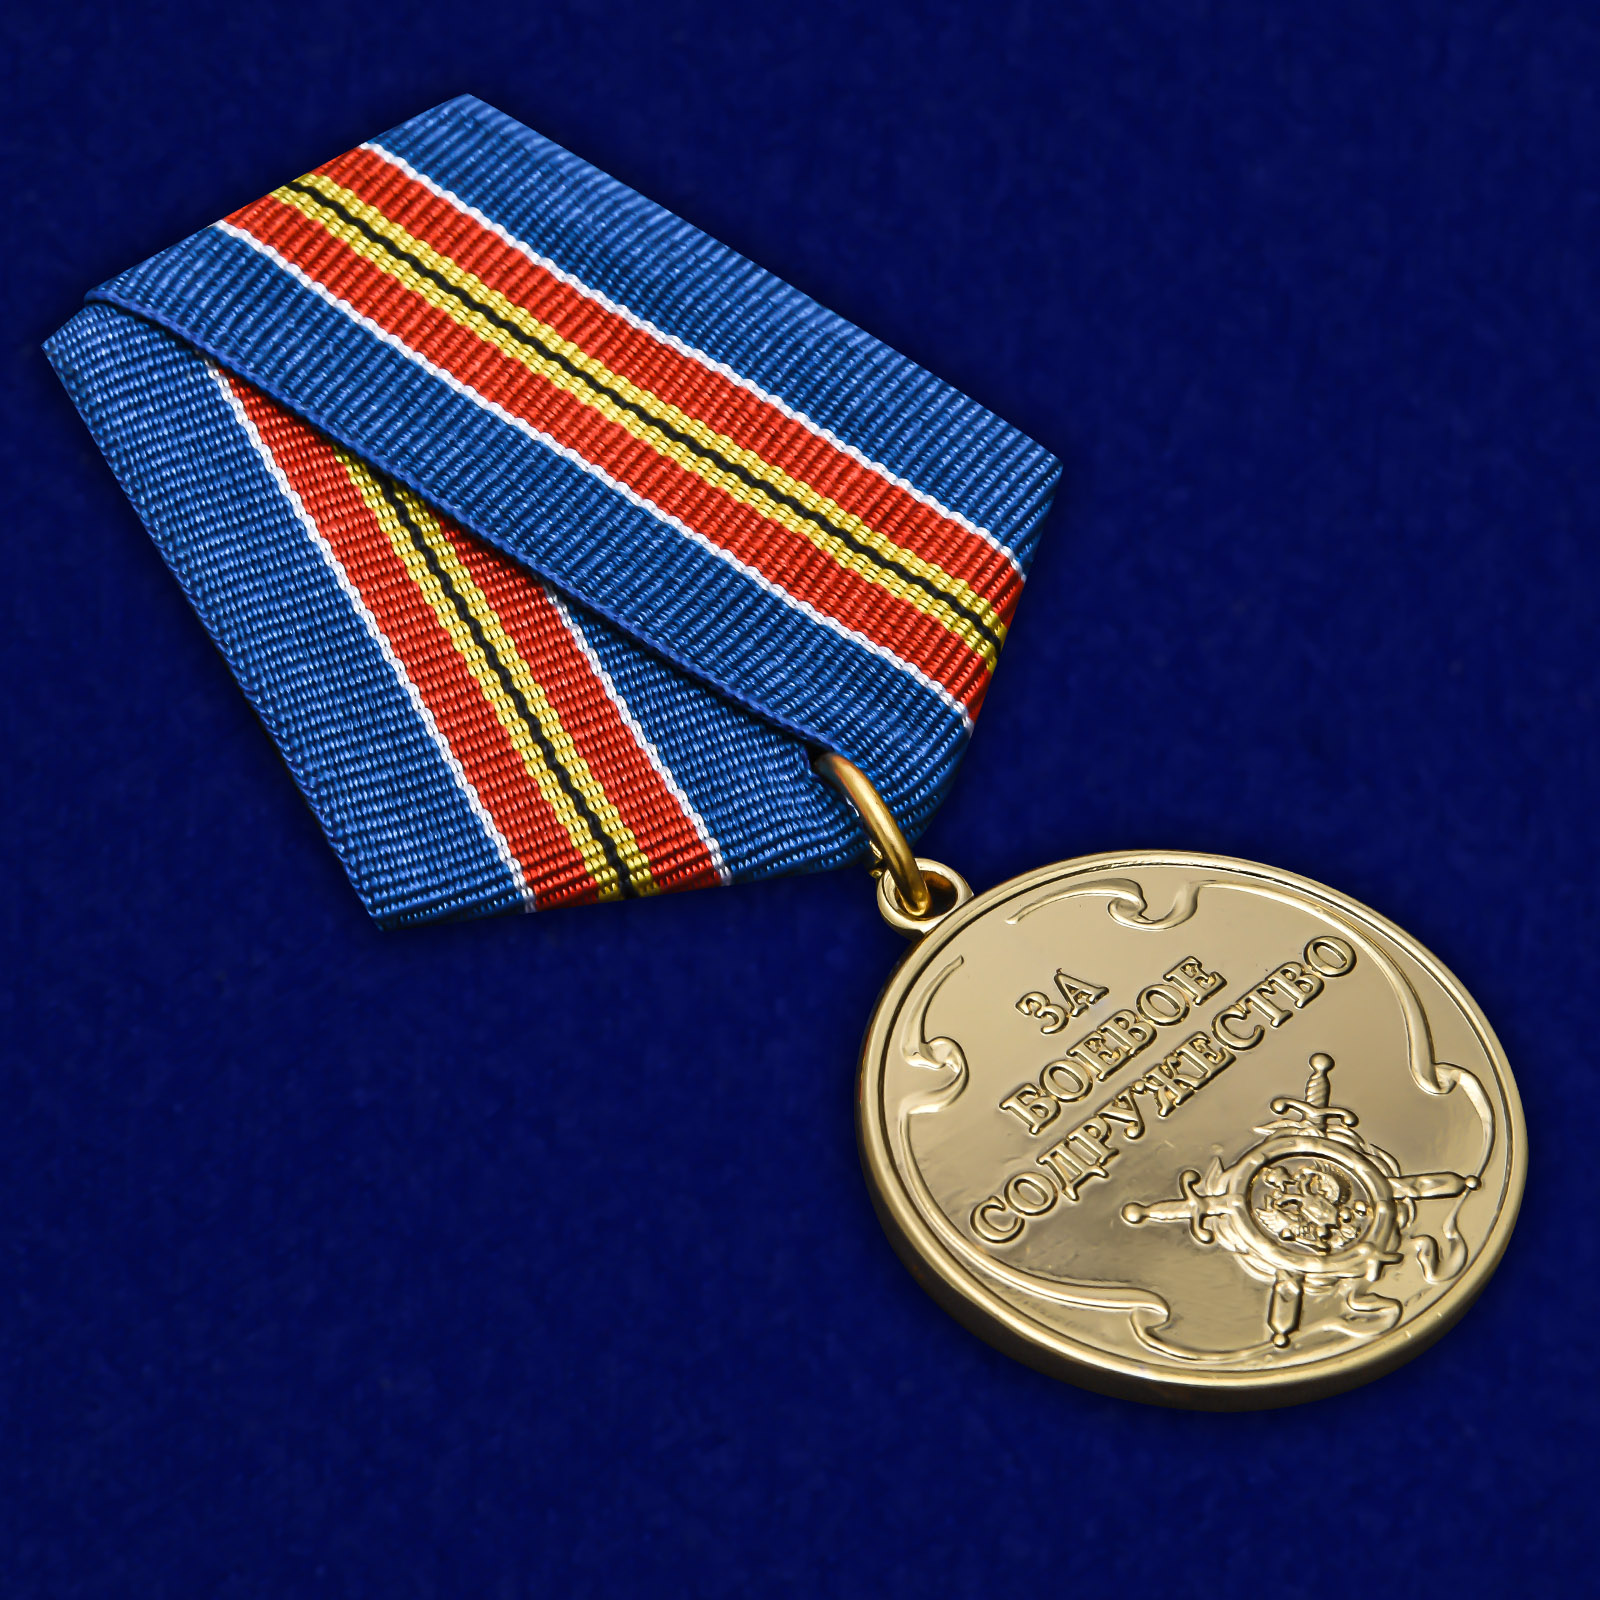 Медаль "За боевое содружество" МВД России 